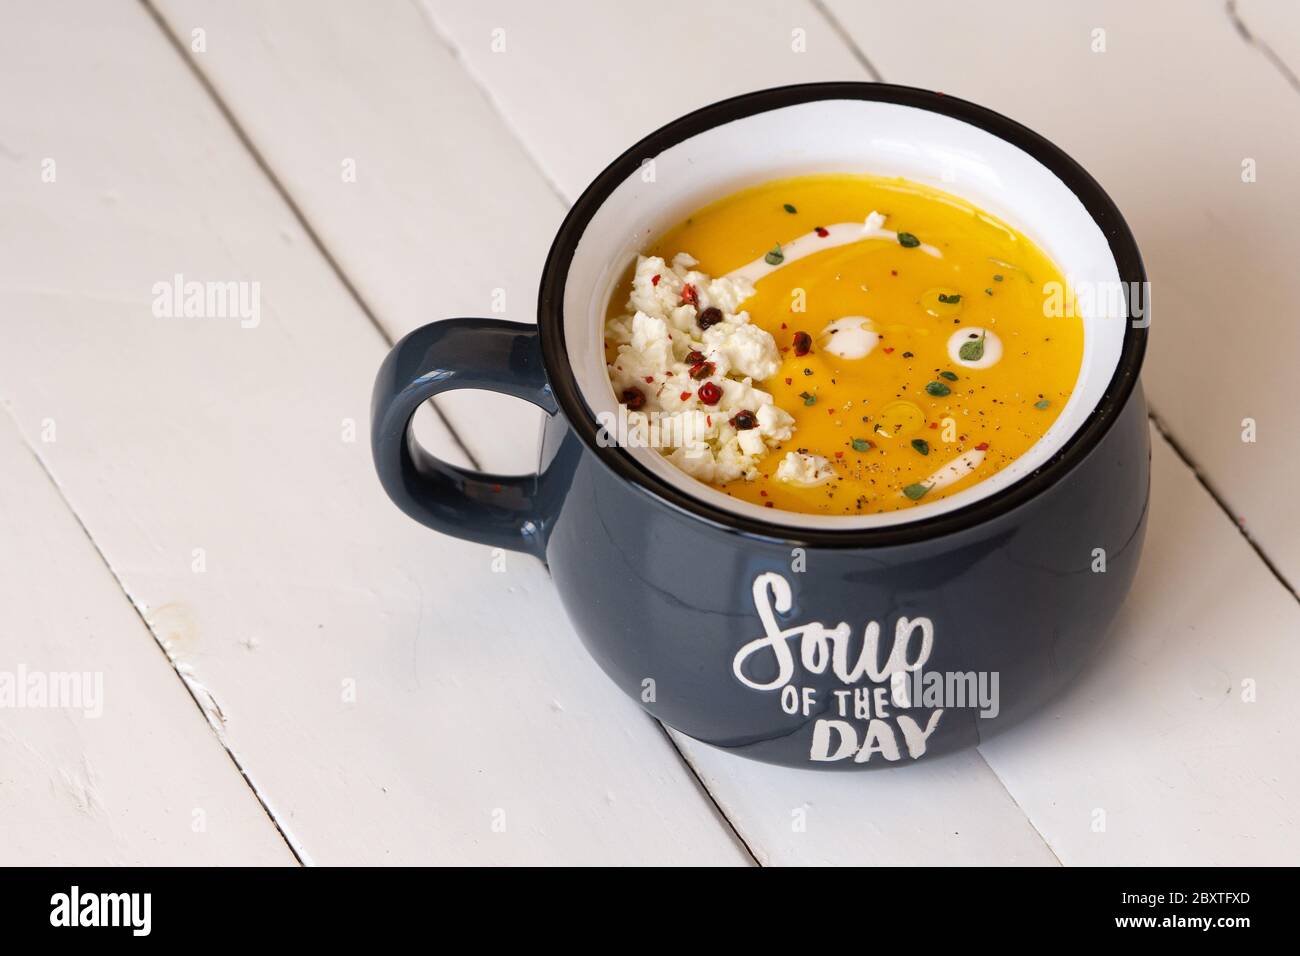 Zuppa di zucca in una ciotola blu isolata. Iscrizione: Zuppa del giorno. Pranzo o cena vegetariani. Concetto di cibo sano. Spazio di copia. Foto Stock